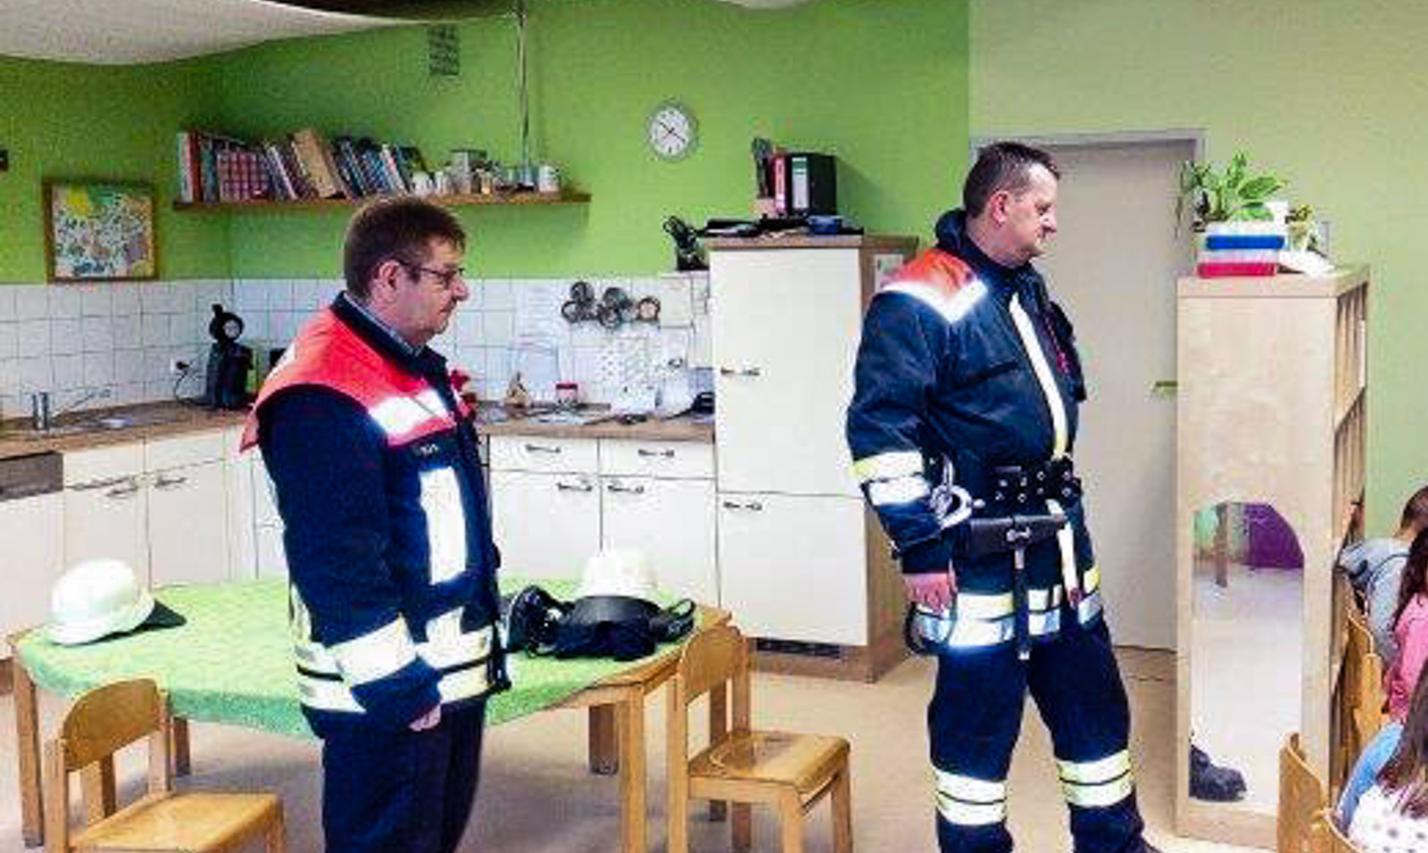 Feuerwehr zu Besuch im Kindergarten